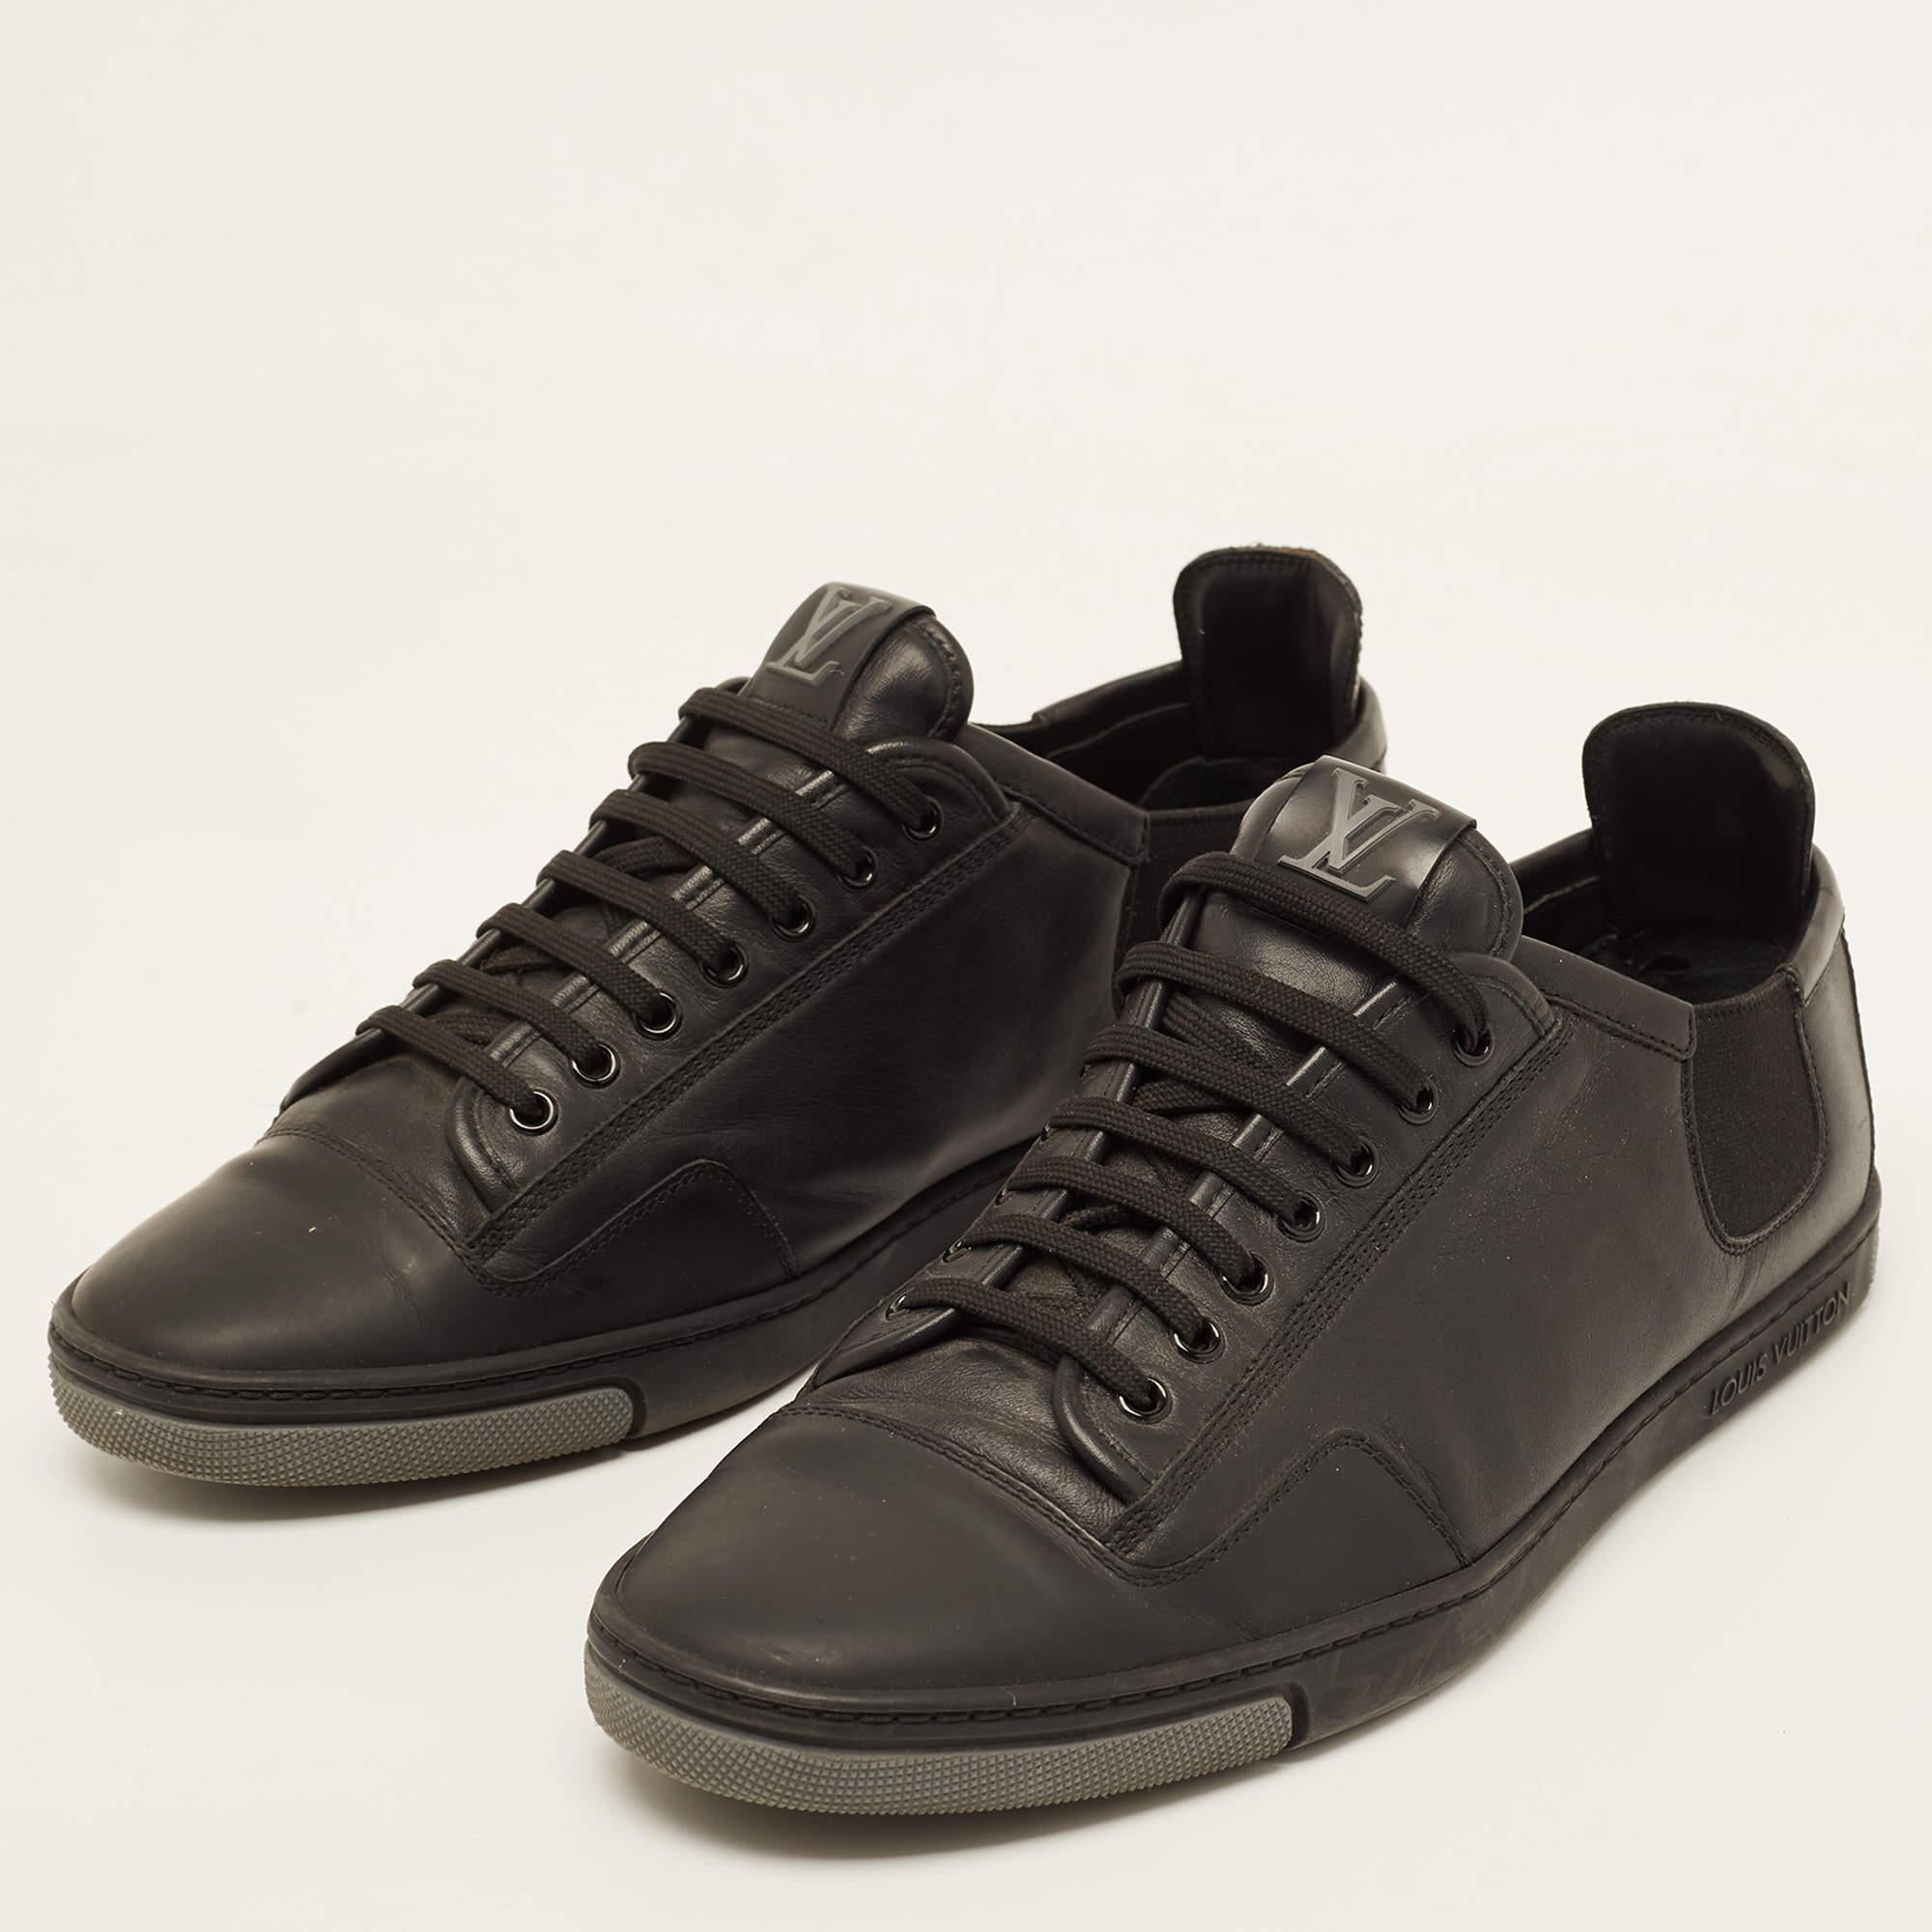 Mit diesen schwarzen LV-Sneakern sind Sie auf der Höhe der Zeit. Diese Premium-Treter bieten eine harmonische Mischung aus Stil und Komfort, perfekt für alle, die bei jedem Schritt Raffinesse verlangen.

